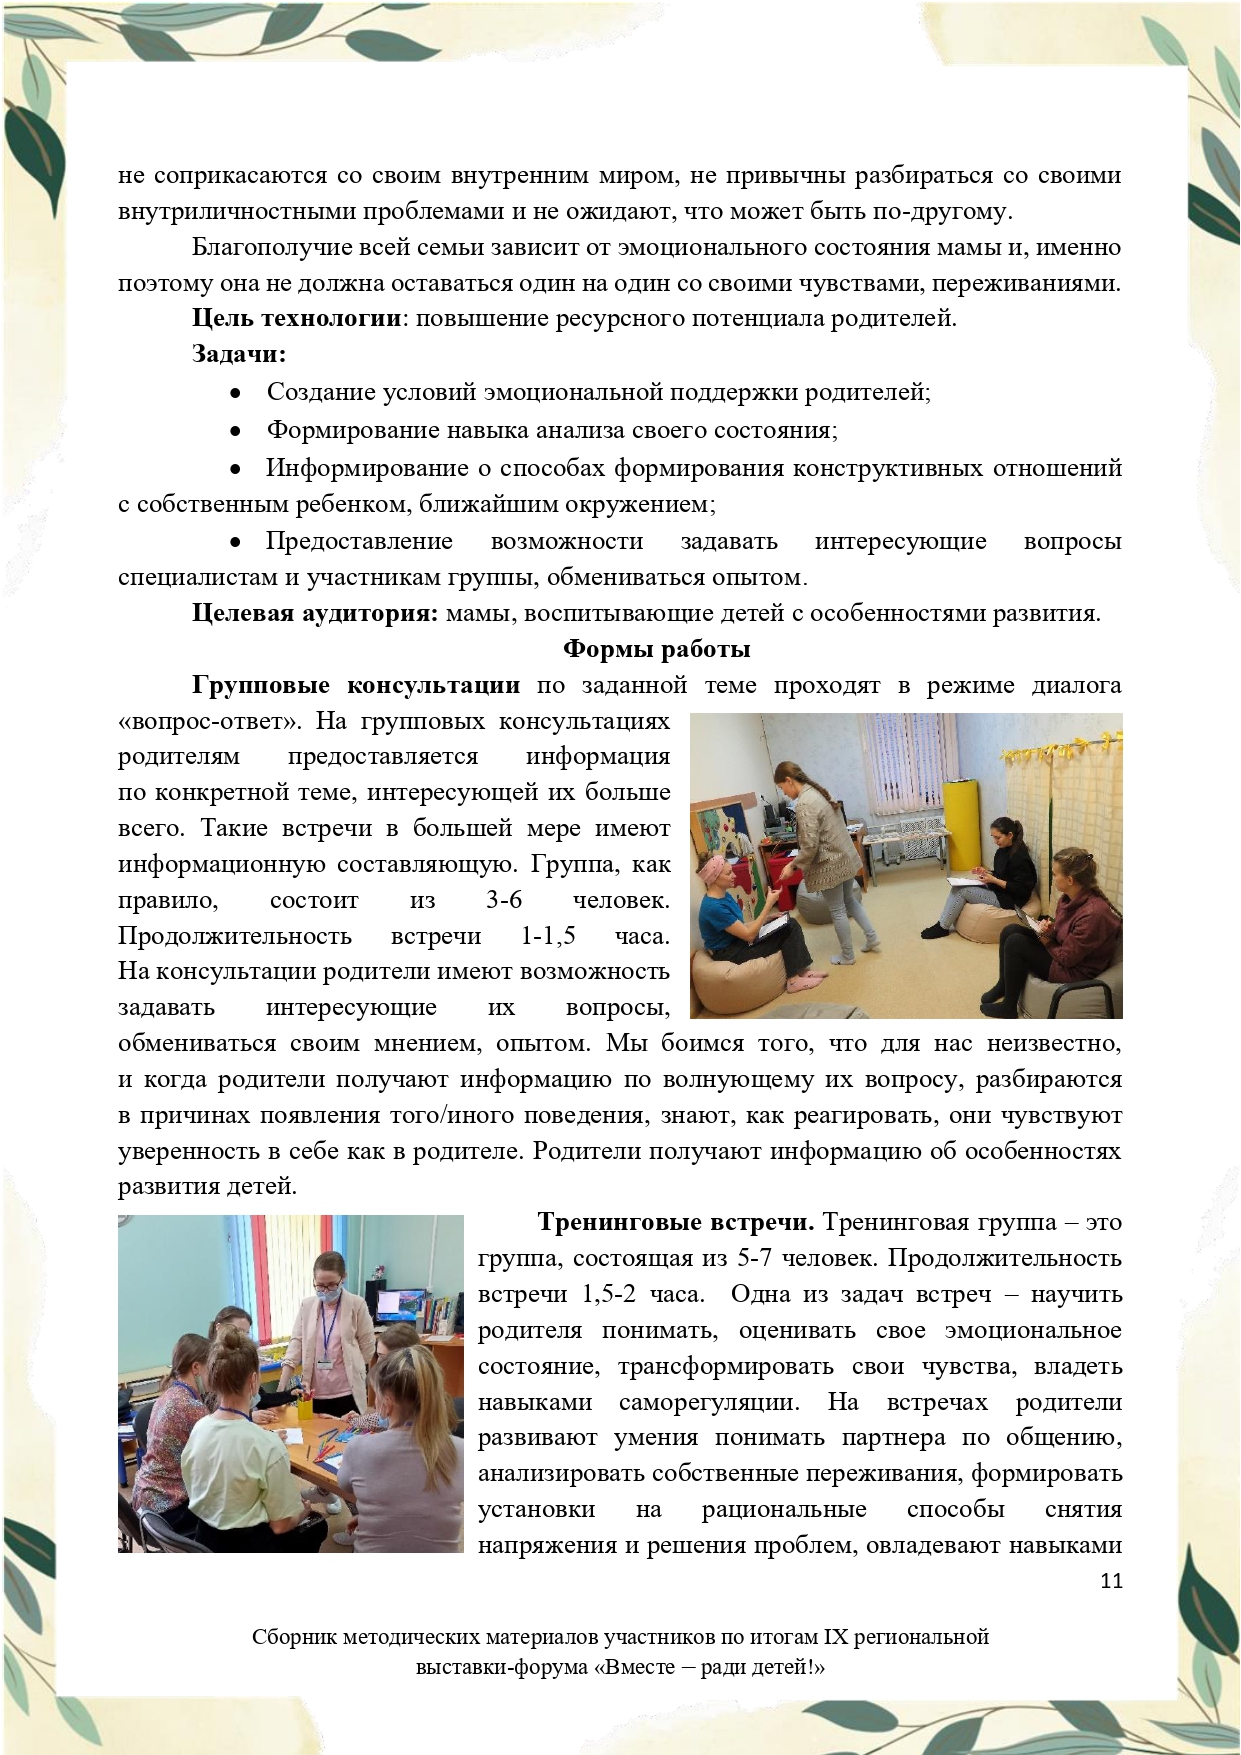 Sbornik_metodicheskikh_materialov_uchastnikov_IX_regionalnoy_vystavki-foruma_Vmeste__radi_detey_33__2023_page-0011